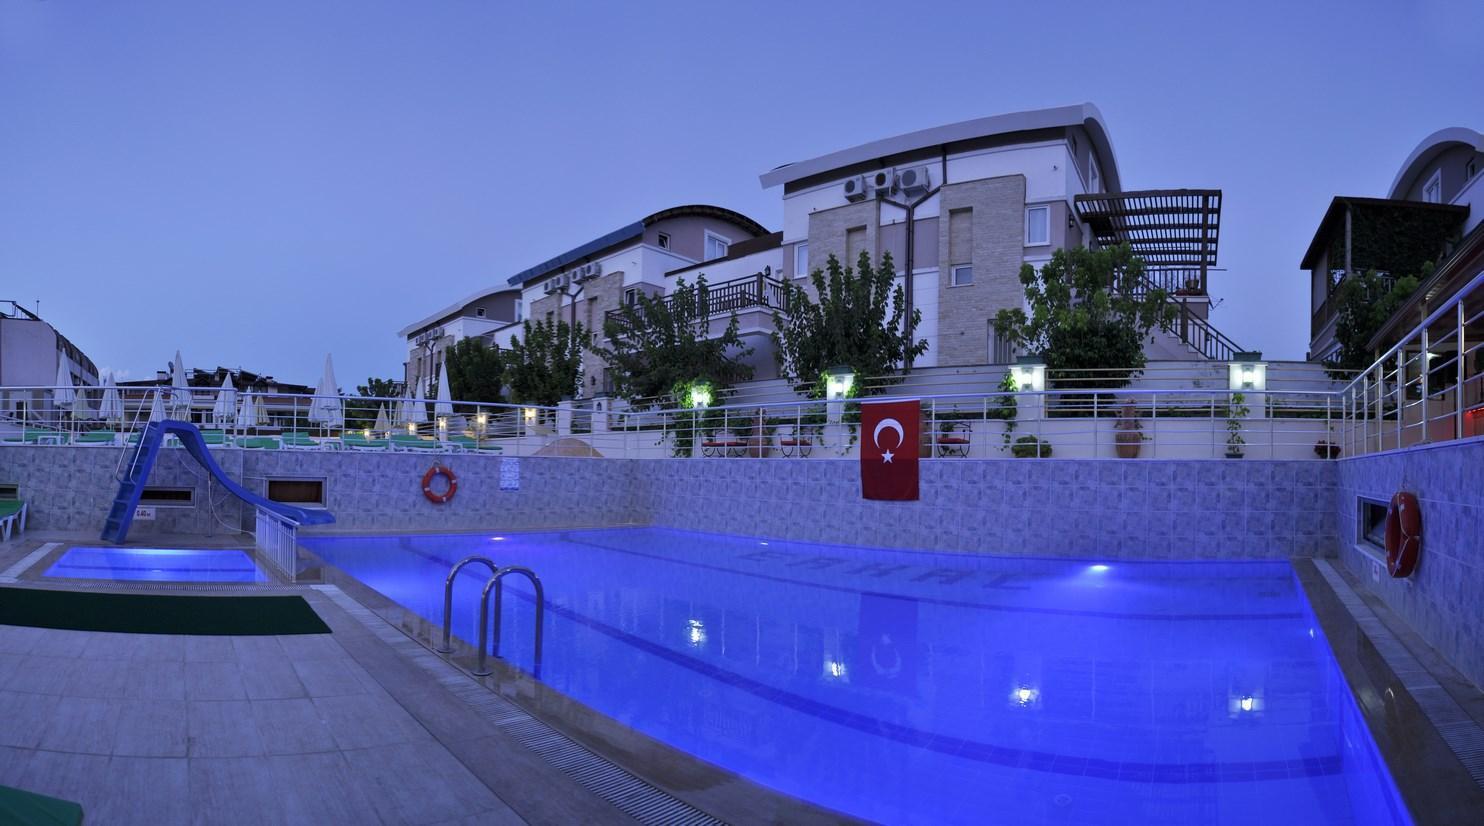 Erkal Resort Hotel Kemer Exterior foto